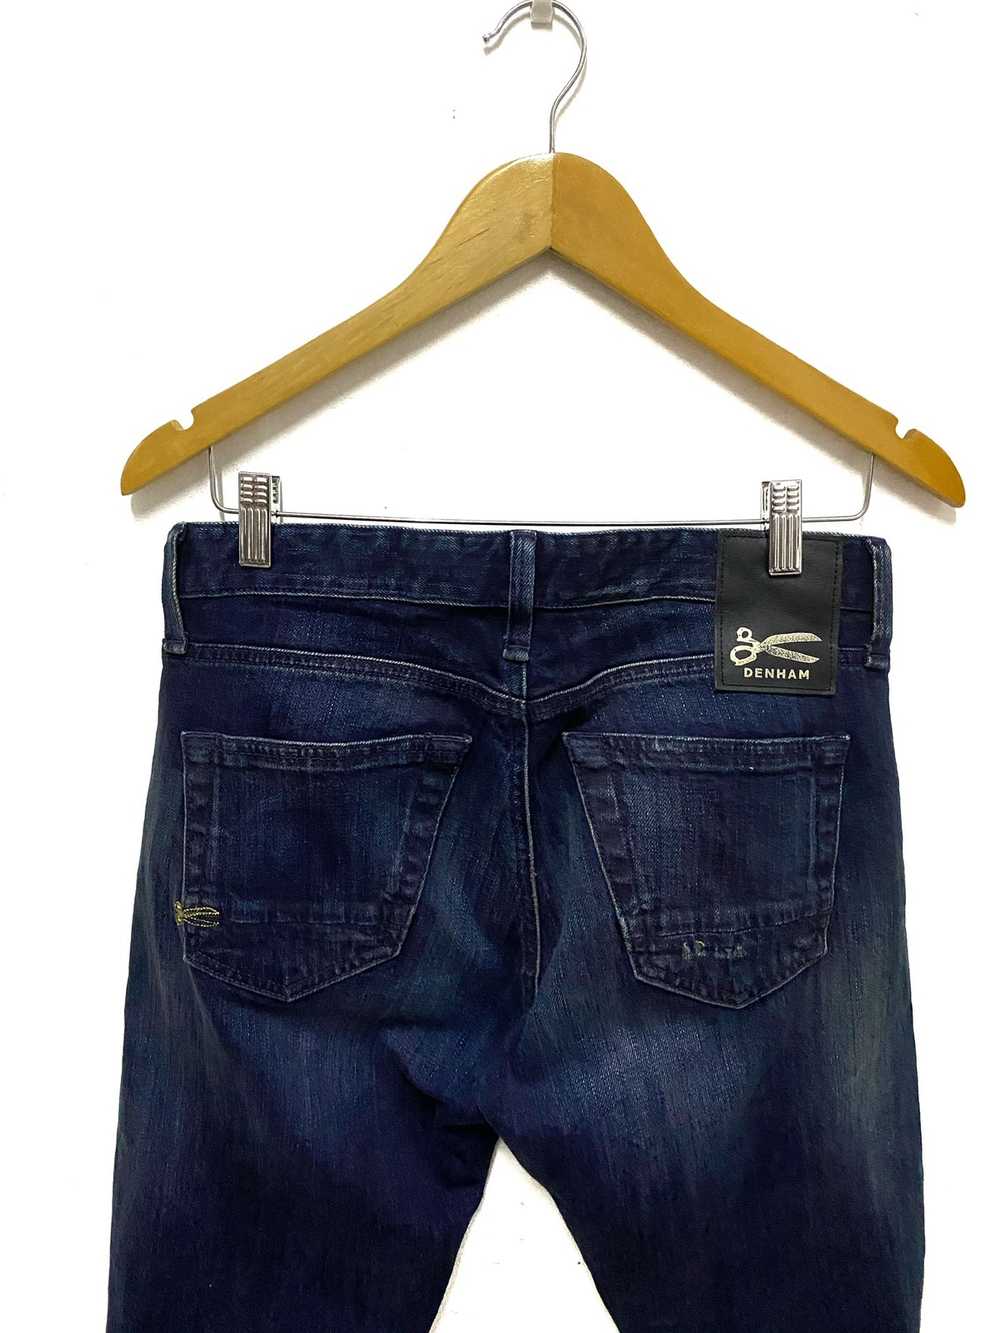 Denham - Denham Razor Slim Fit Selvedge Jeans Mad… - image 4